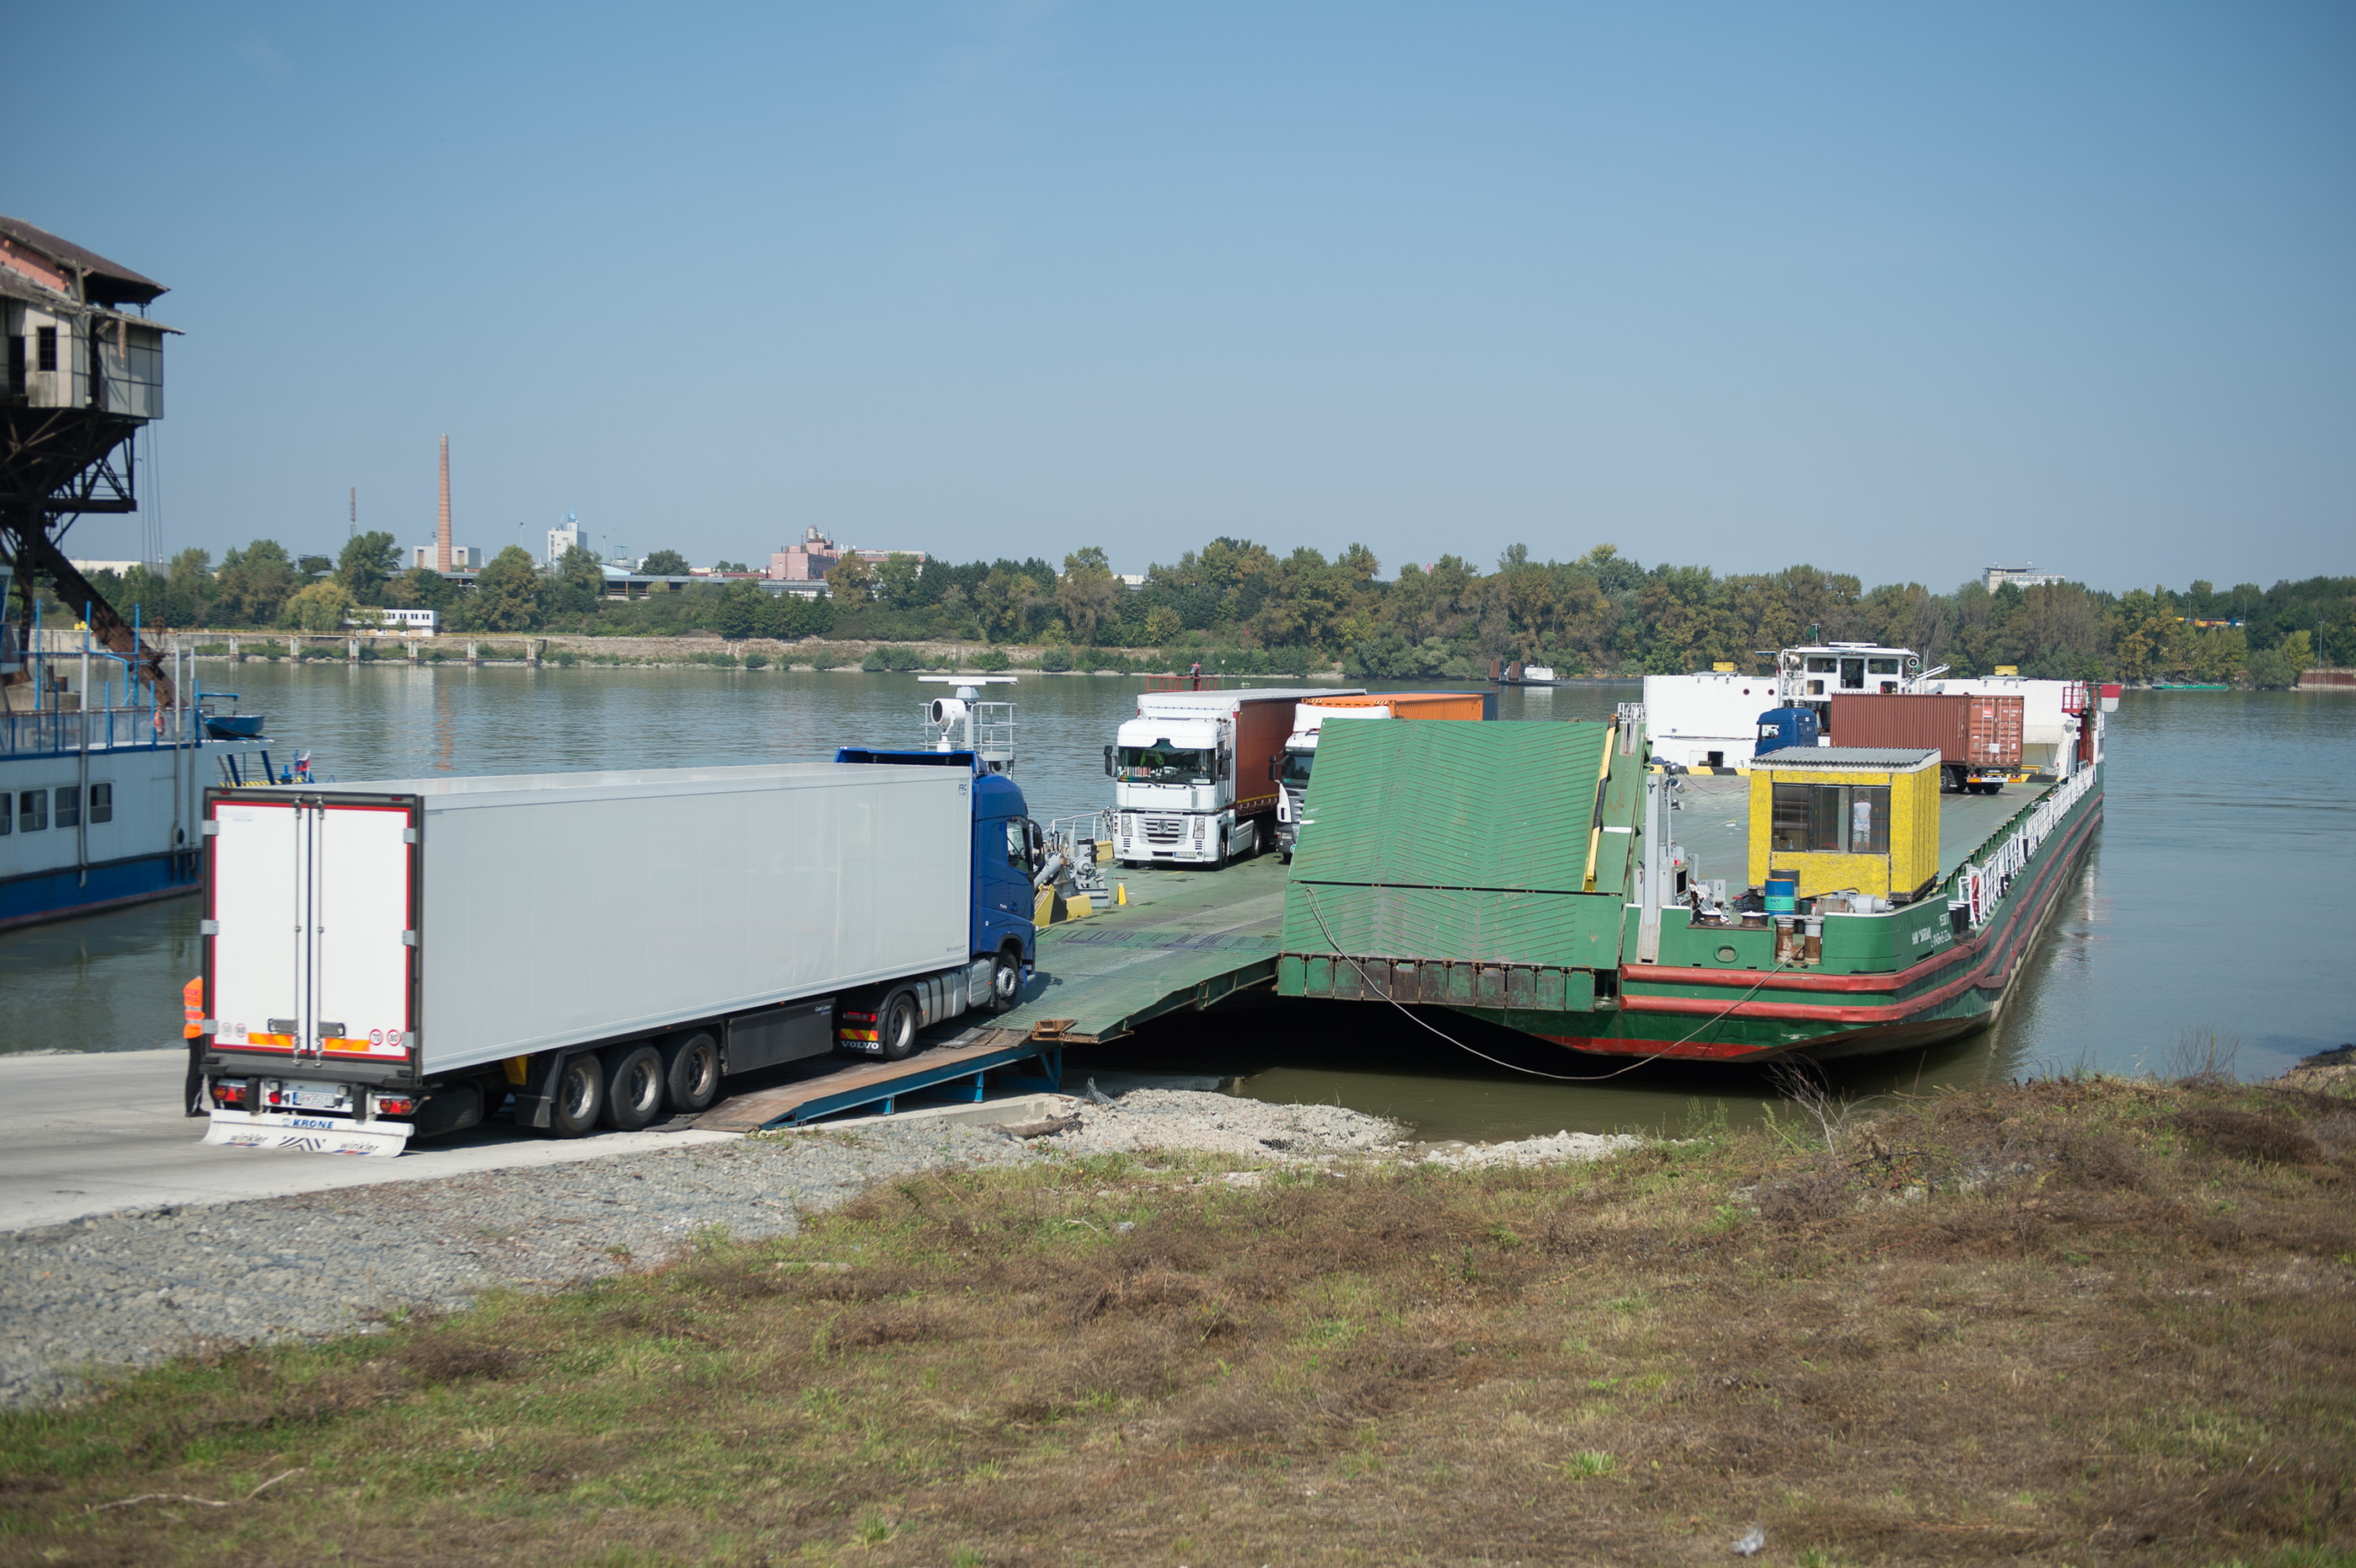 Esztergom freight ferry